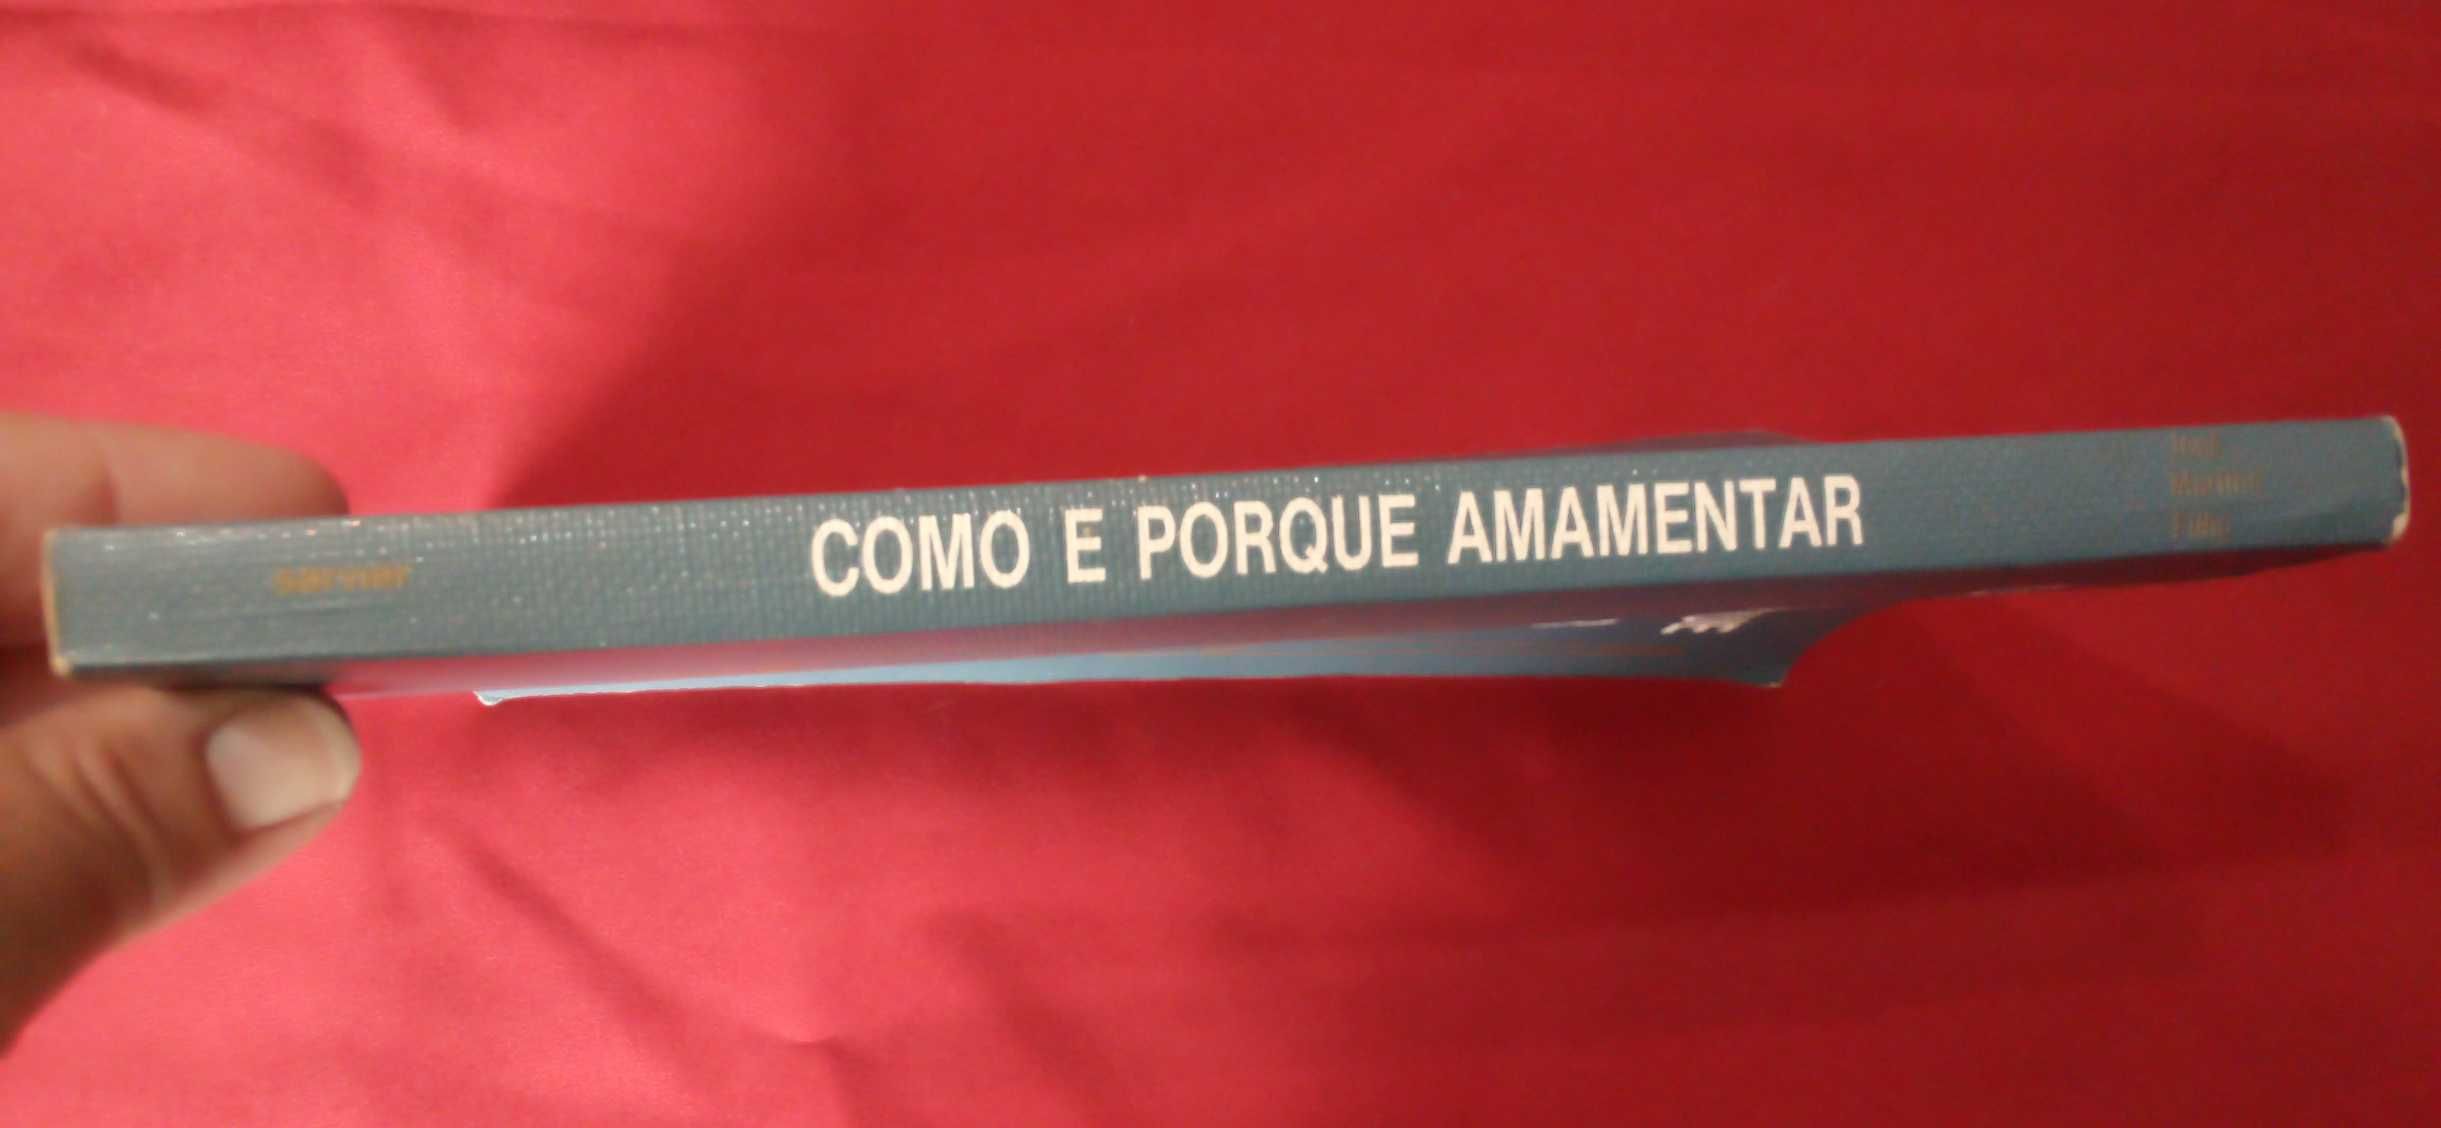 Livro "Como e porque amamentar", de José Martins Filho, 2ª edição